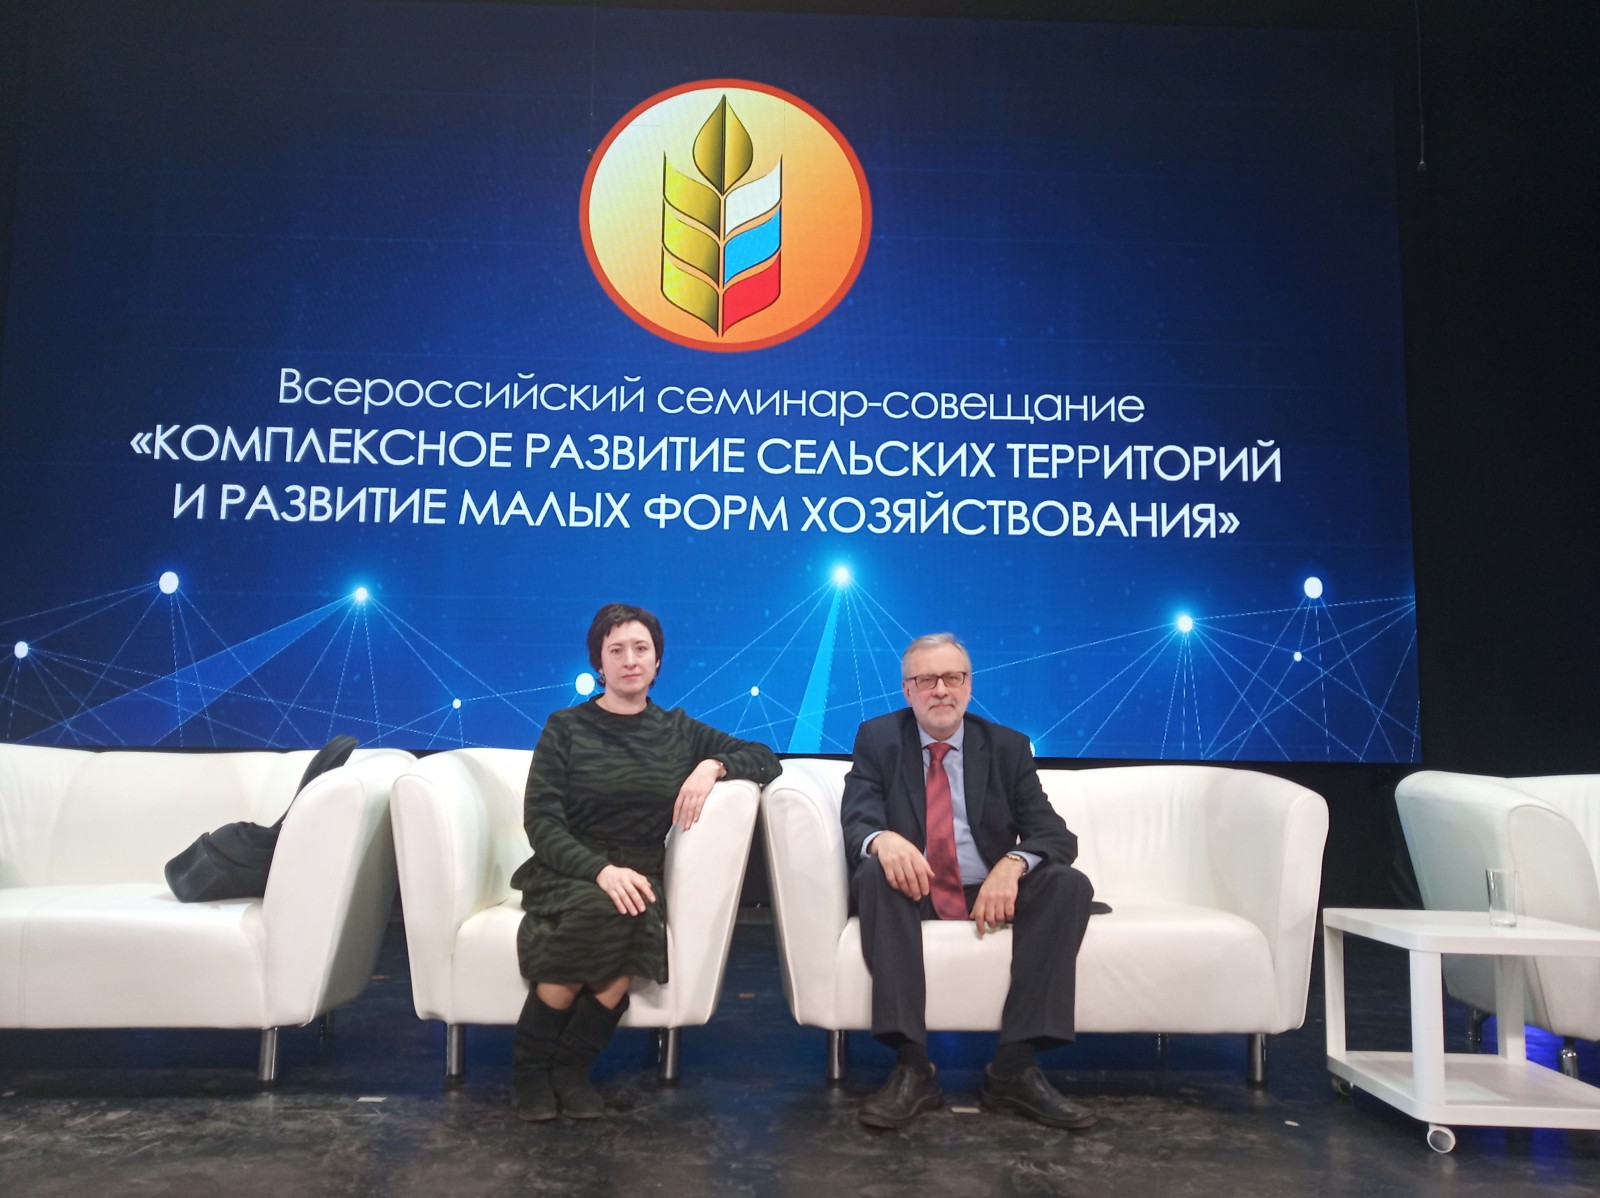 Всероссийский семинар-совещание «Комплексное развитие сельских территорий и развитие малых форм хозяйствования»